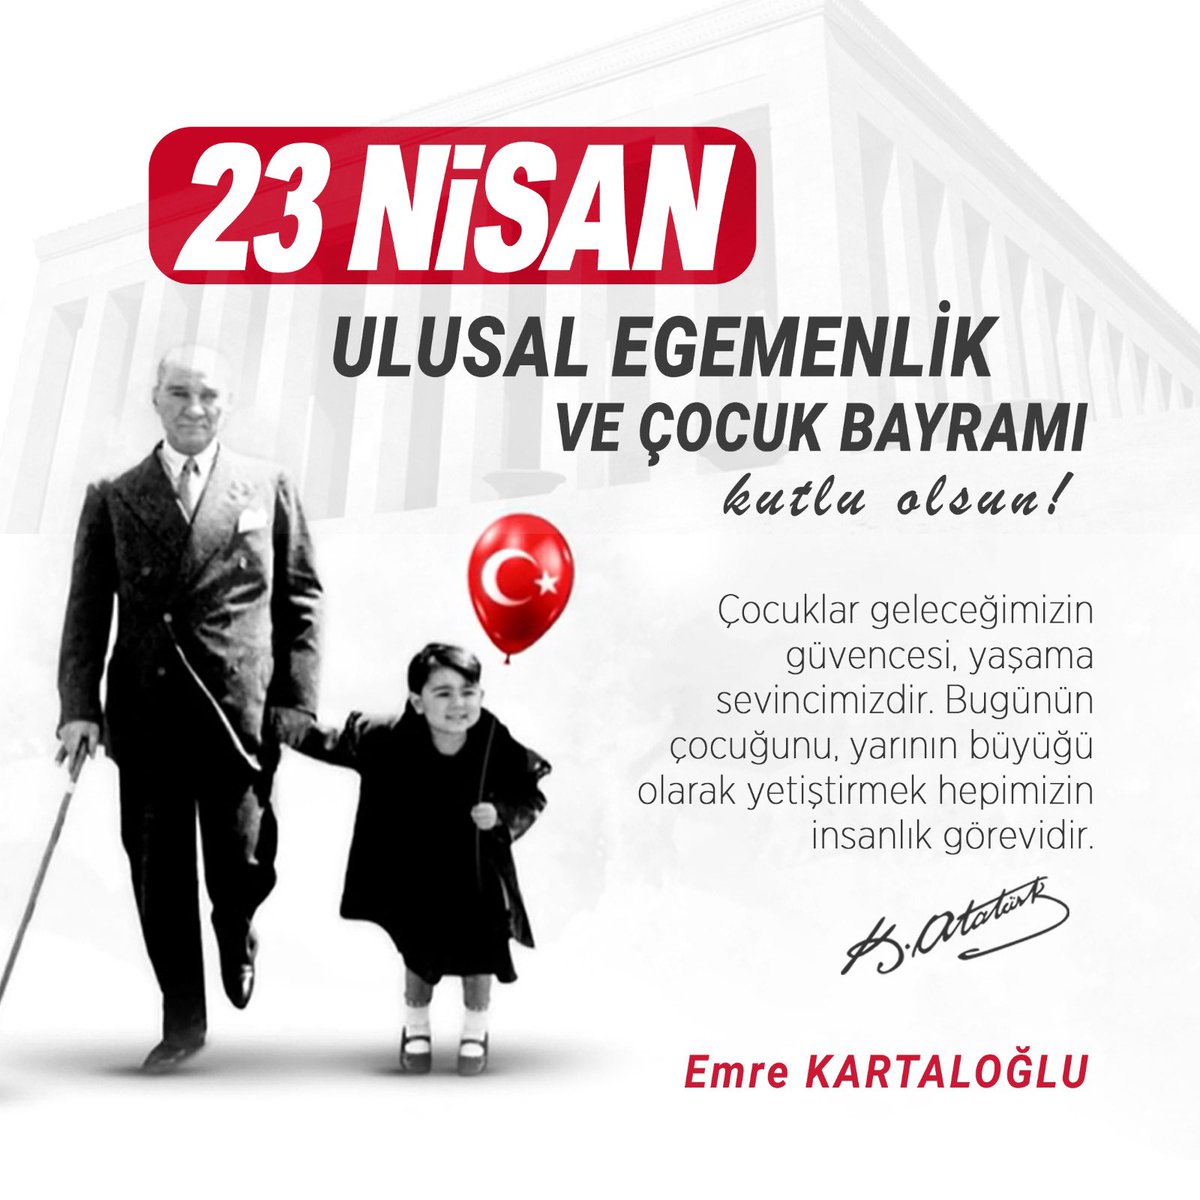 Atatürk’ün izinden yürüyerek, geleceğimiz ve umudumuz olan çocuklarımıza demokratik, çağdaş ve barış içinde yaşayabilecekleri bir dünya bırakmak için daha çok çalışacağız. 23 Nisan Ulusal Egemenlik ve Çocuk Bayramı’nı kutluyorum. #türmob